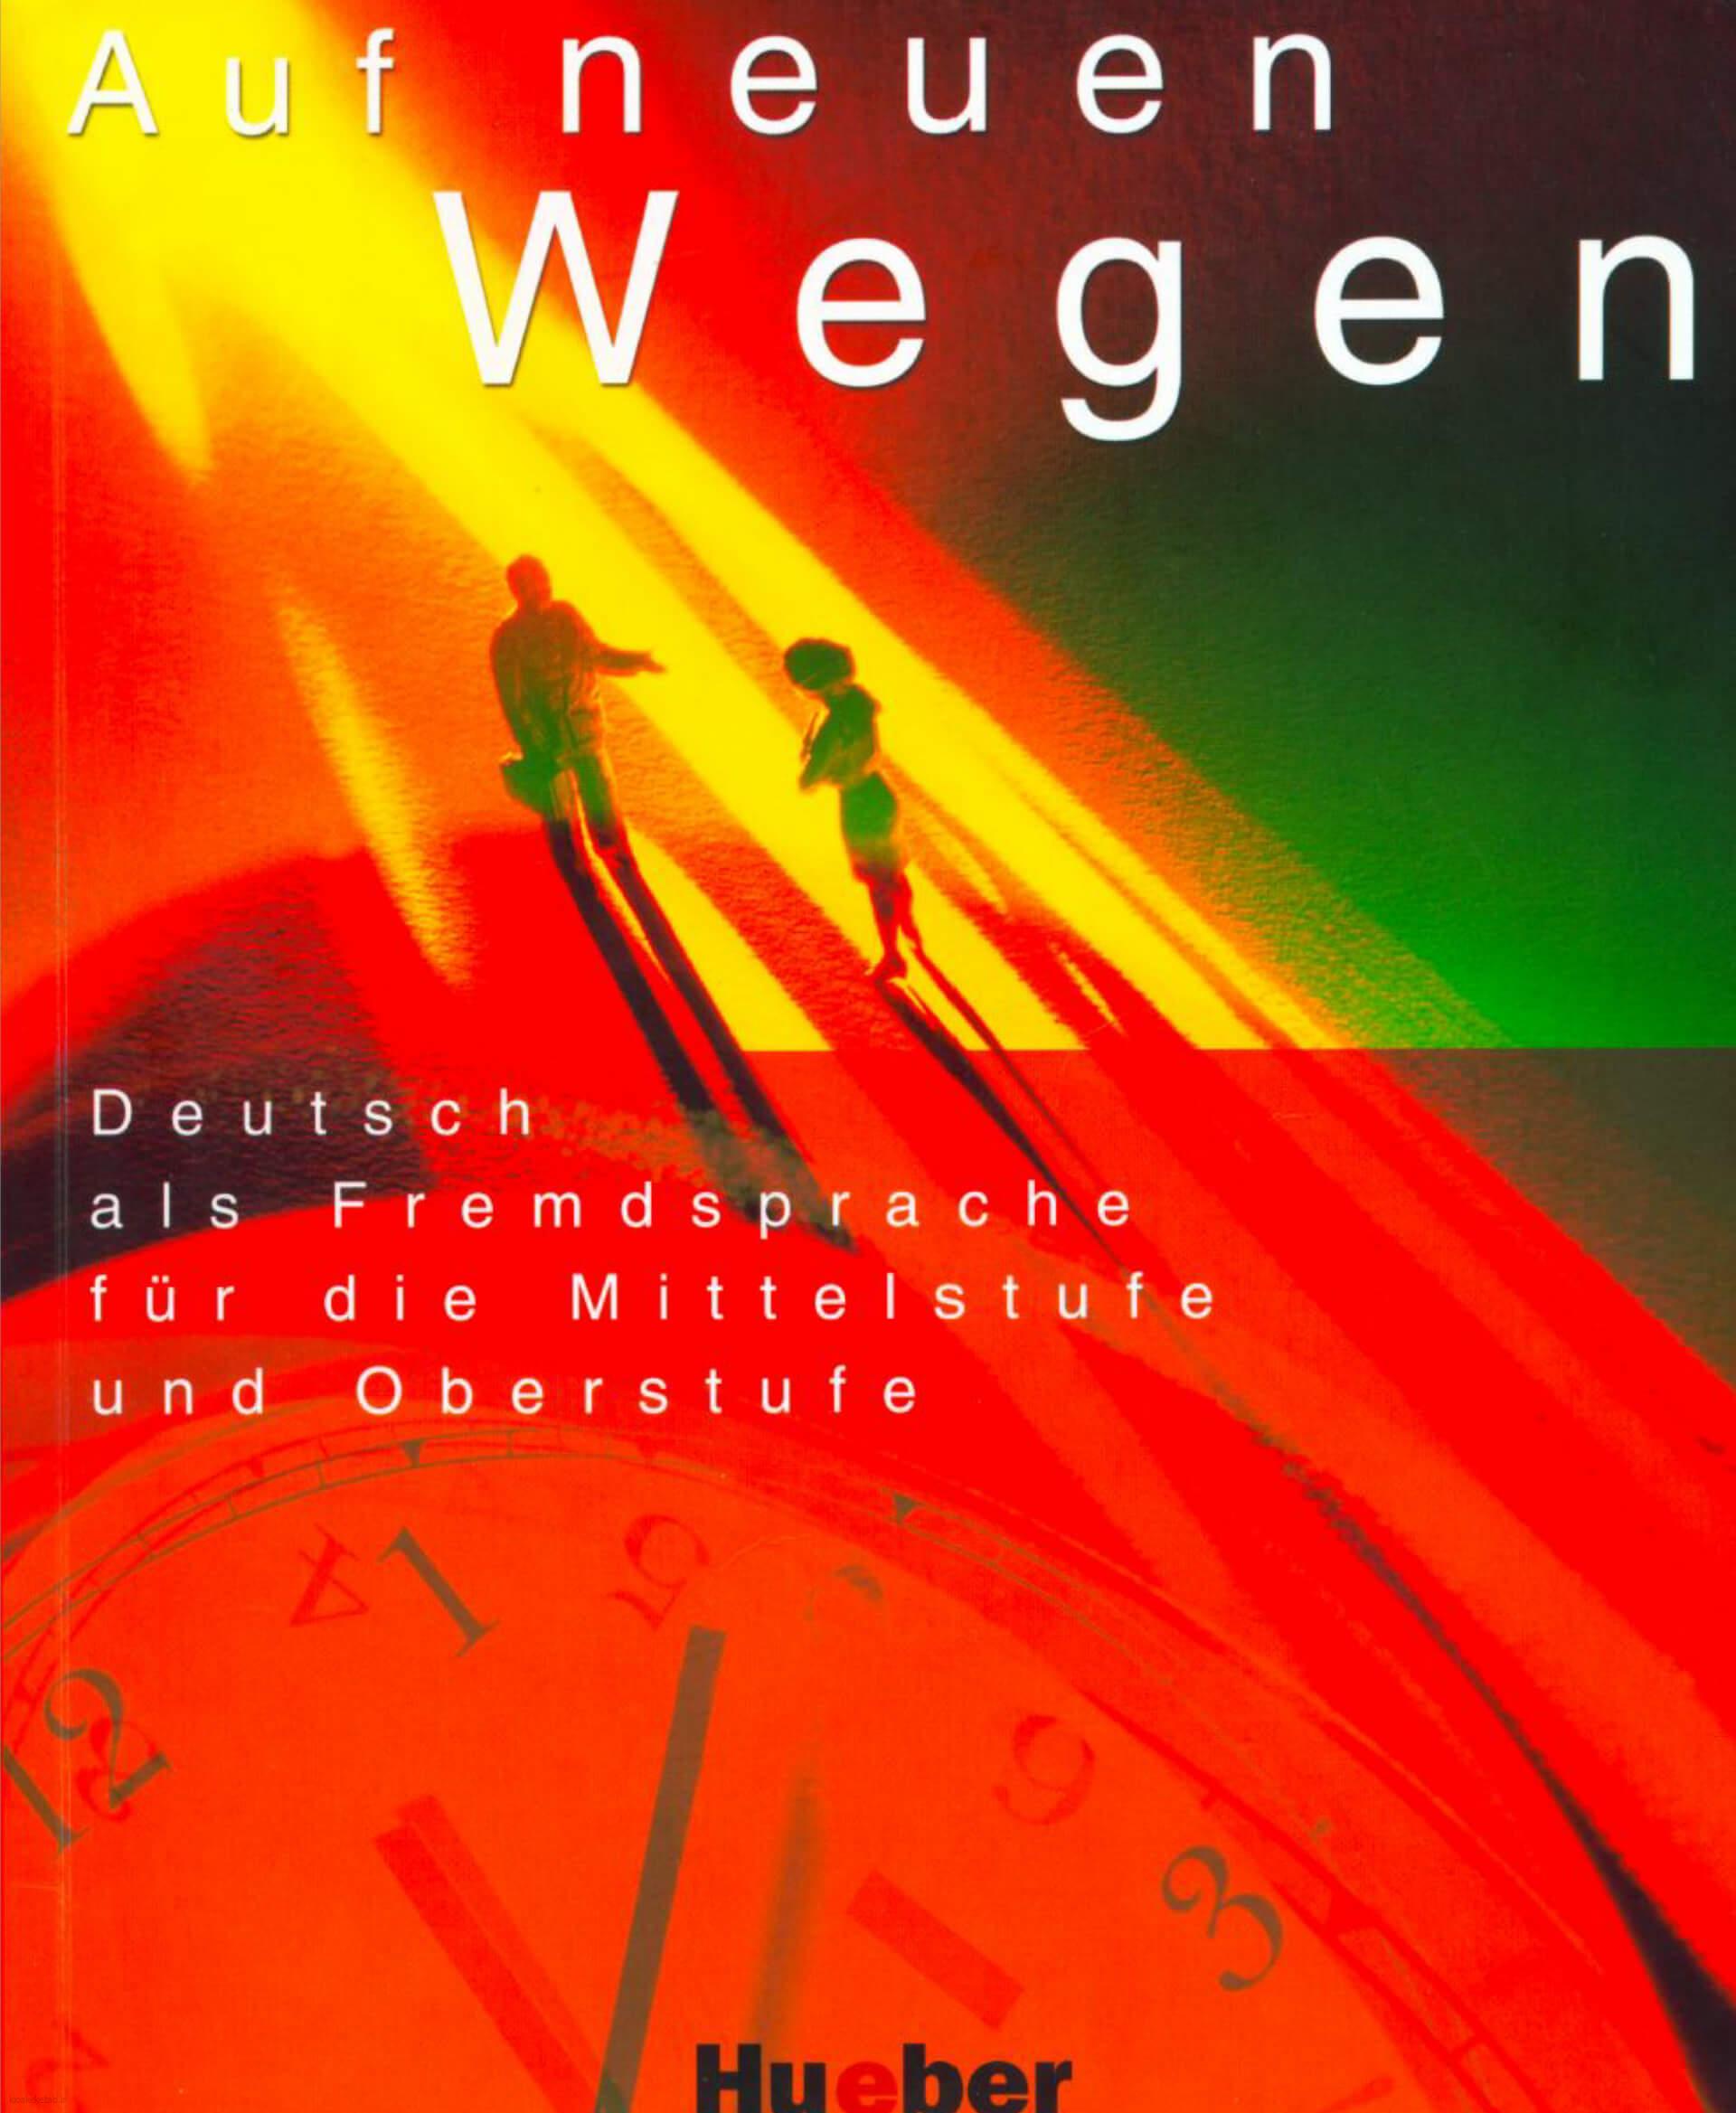 دانلود کتاب آلمانیAuf neuen Wegen